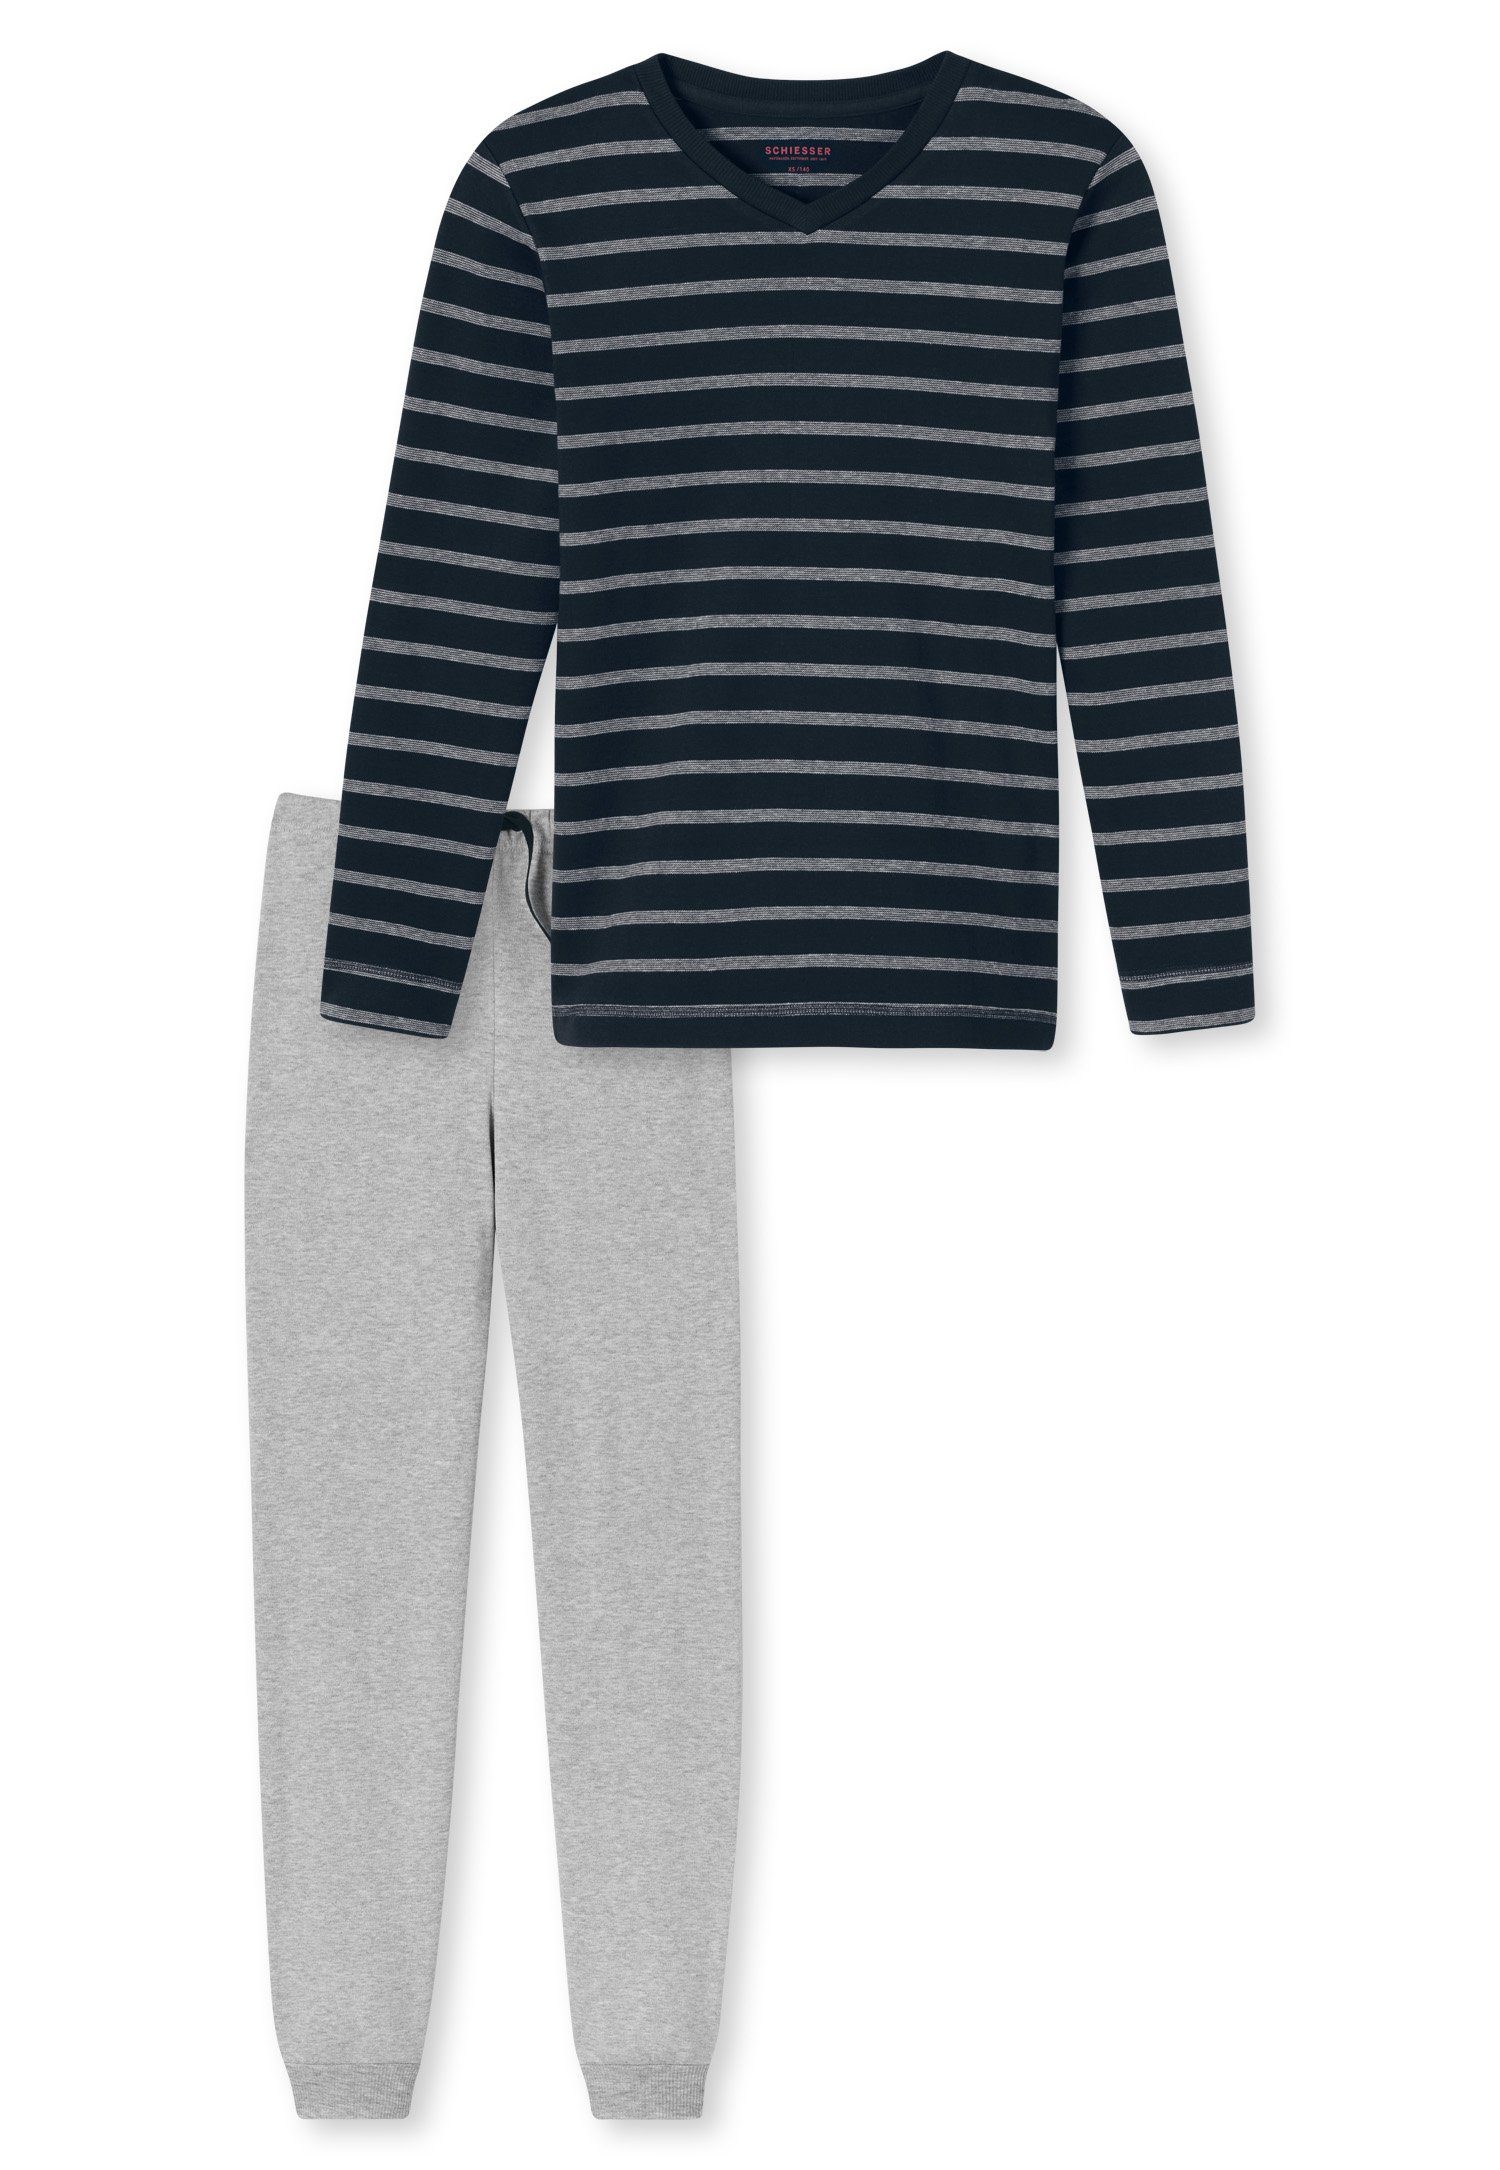 Schiesser Schlafanzug Family (Set, Set) Jungen Schlafanzug lang, Interlock, 100% Baumwolle